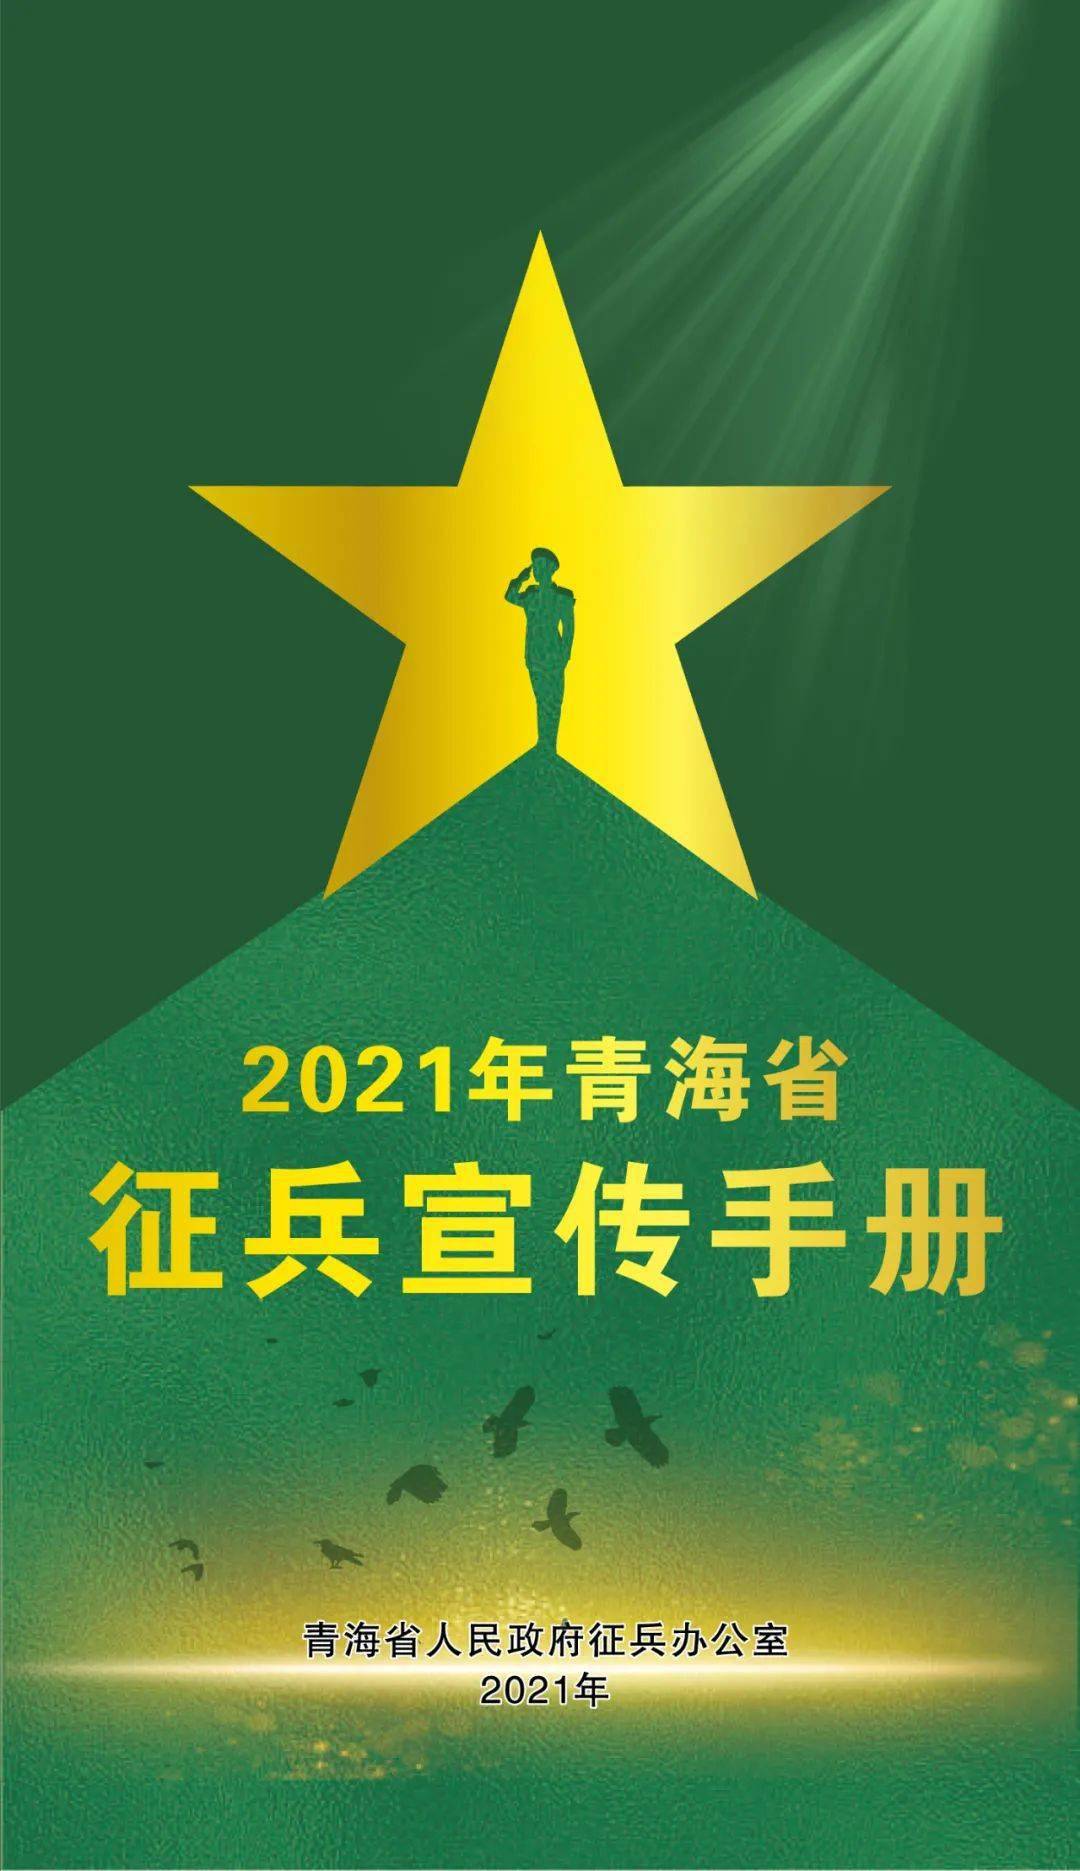 2021年青海省征兵宣传手册来了!_手机搜狐网